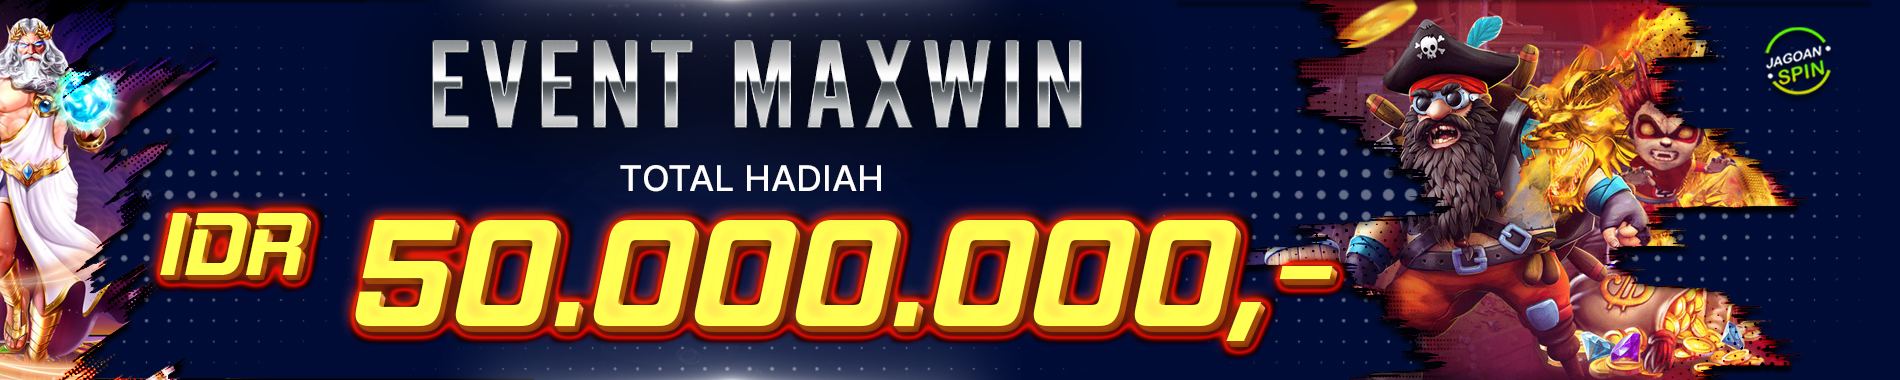 Event Maxwin Slot Jagoanspin Totah Hadiah IDR 50.000.000